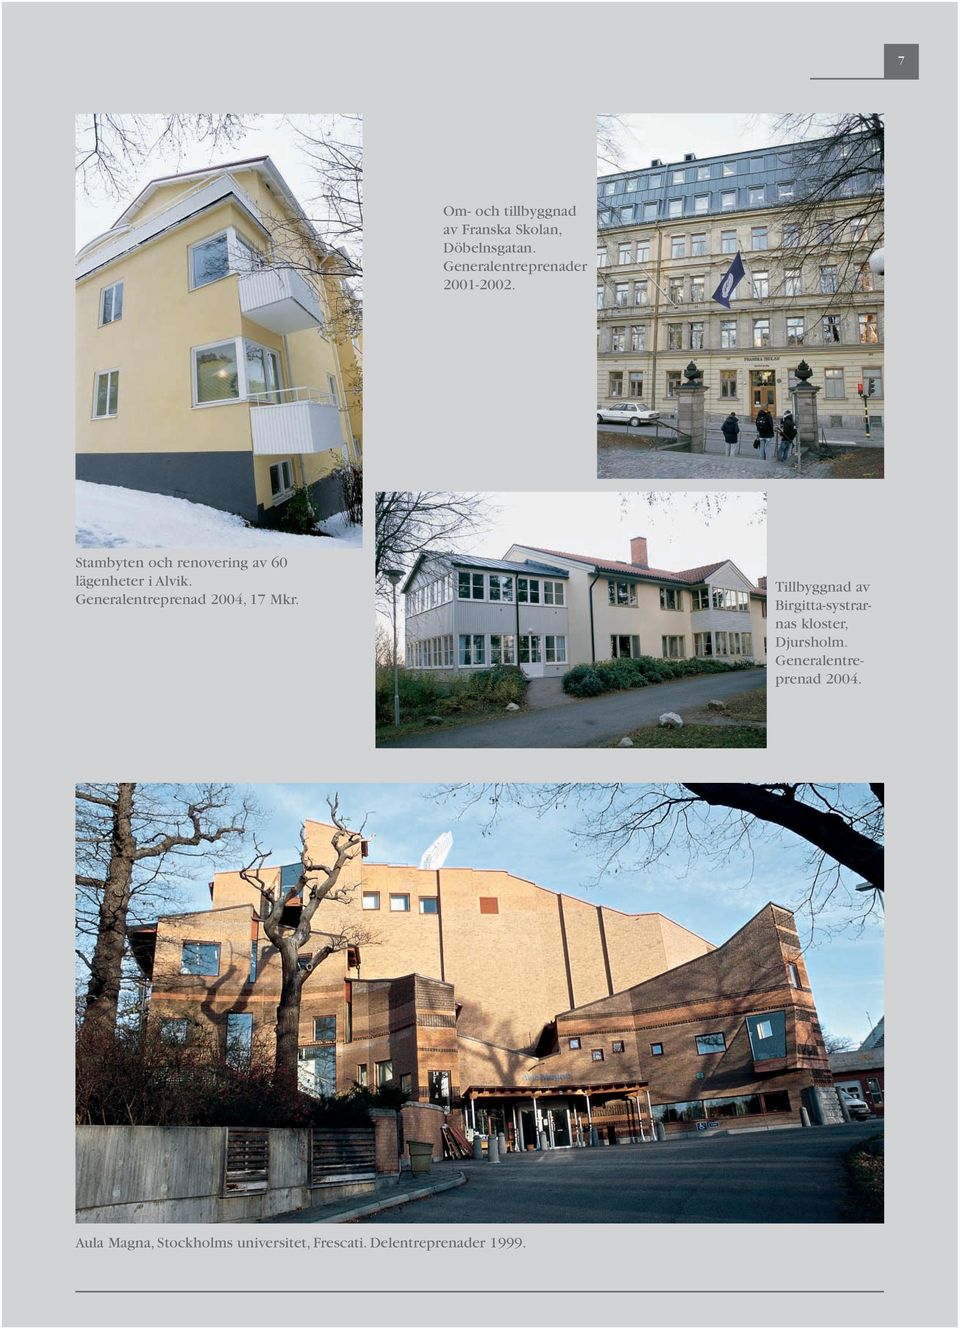 Stambyten och renovering av 60 lägenheter i Alvik.